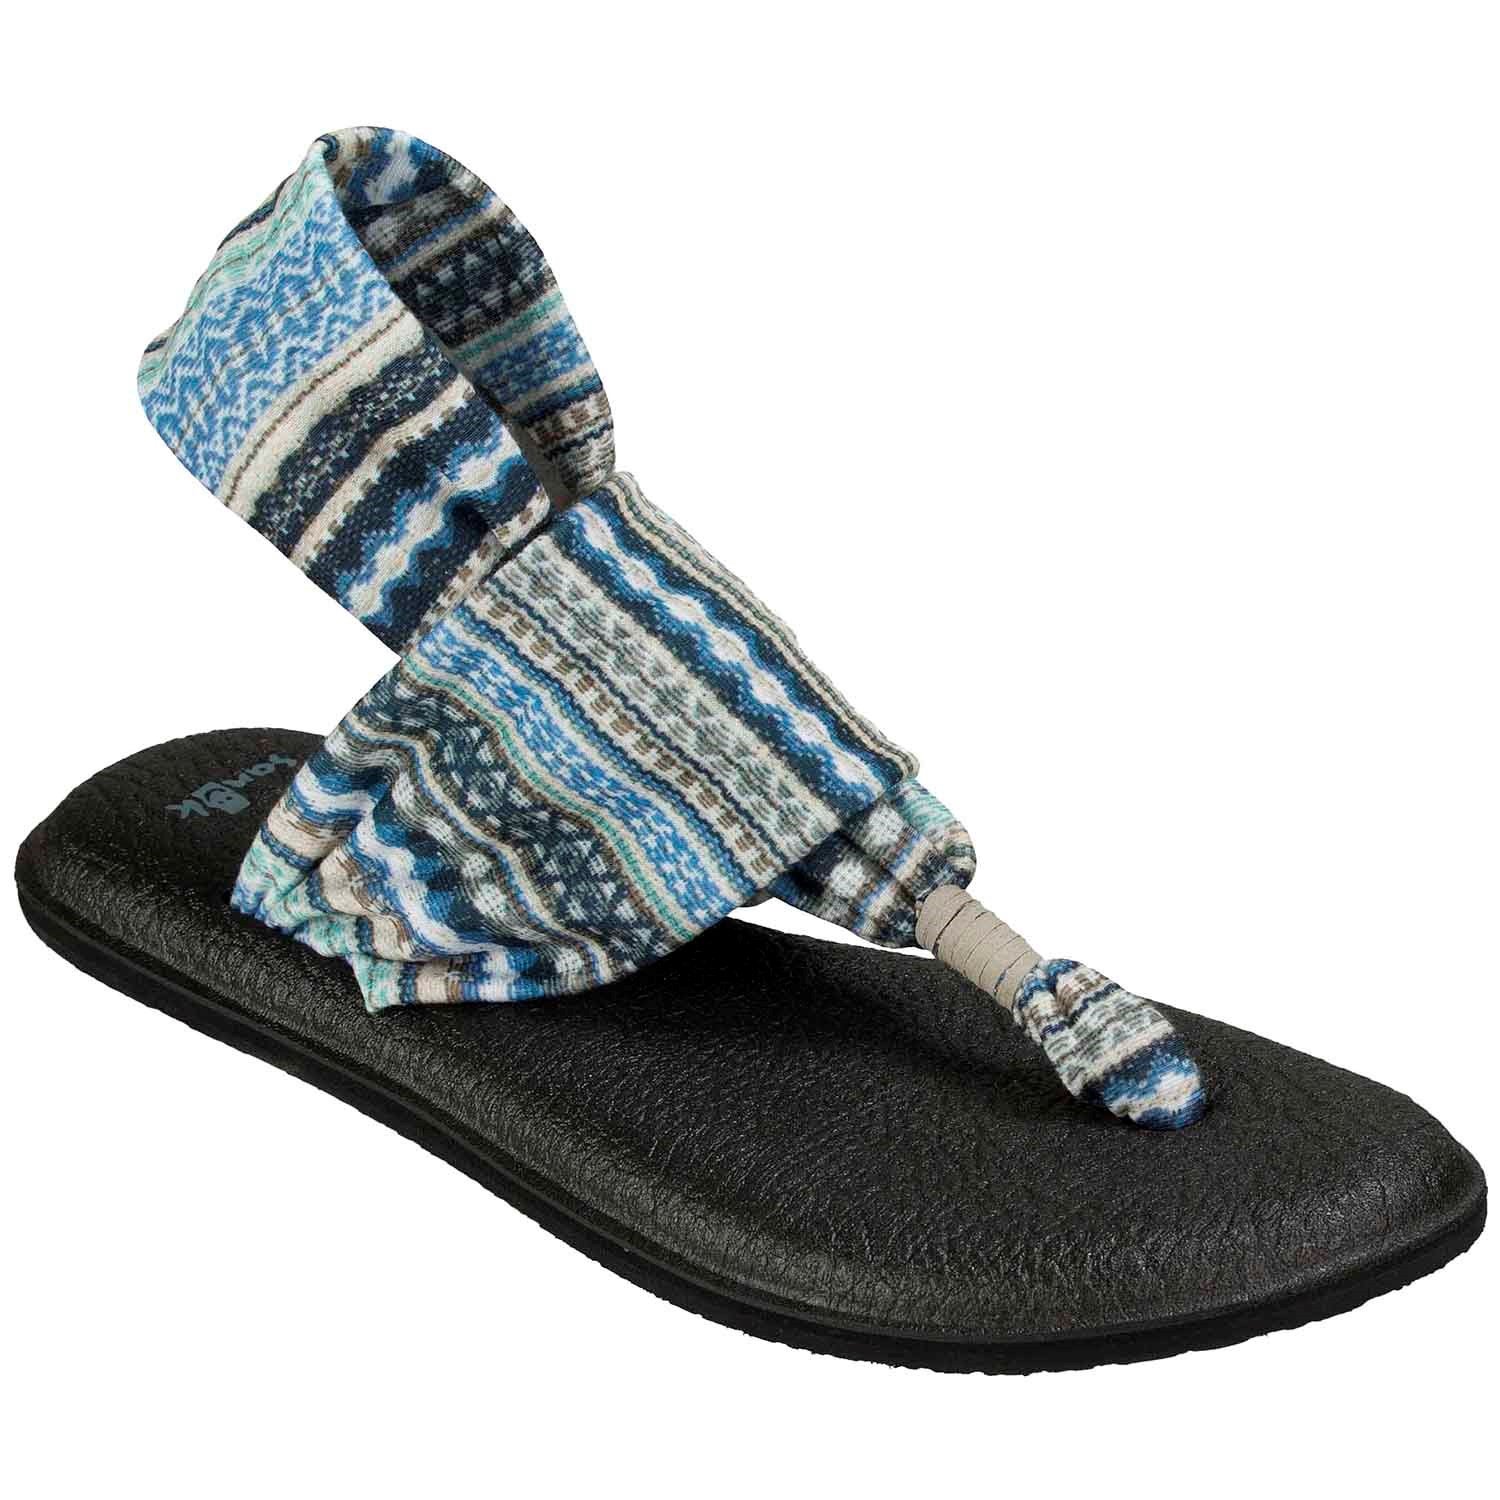 Sanuk, Shoes, Sanuk Yoga Sling 2 Sandals Size 9 Striped